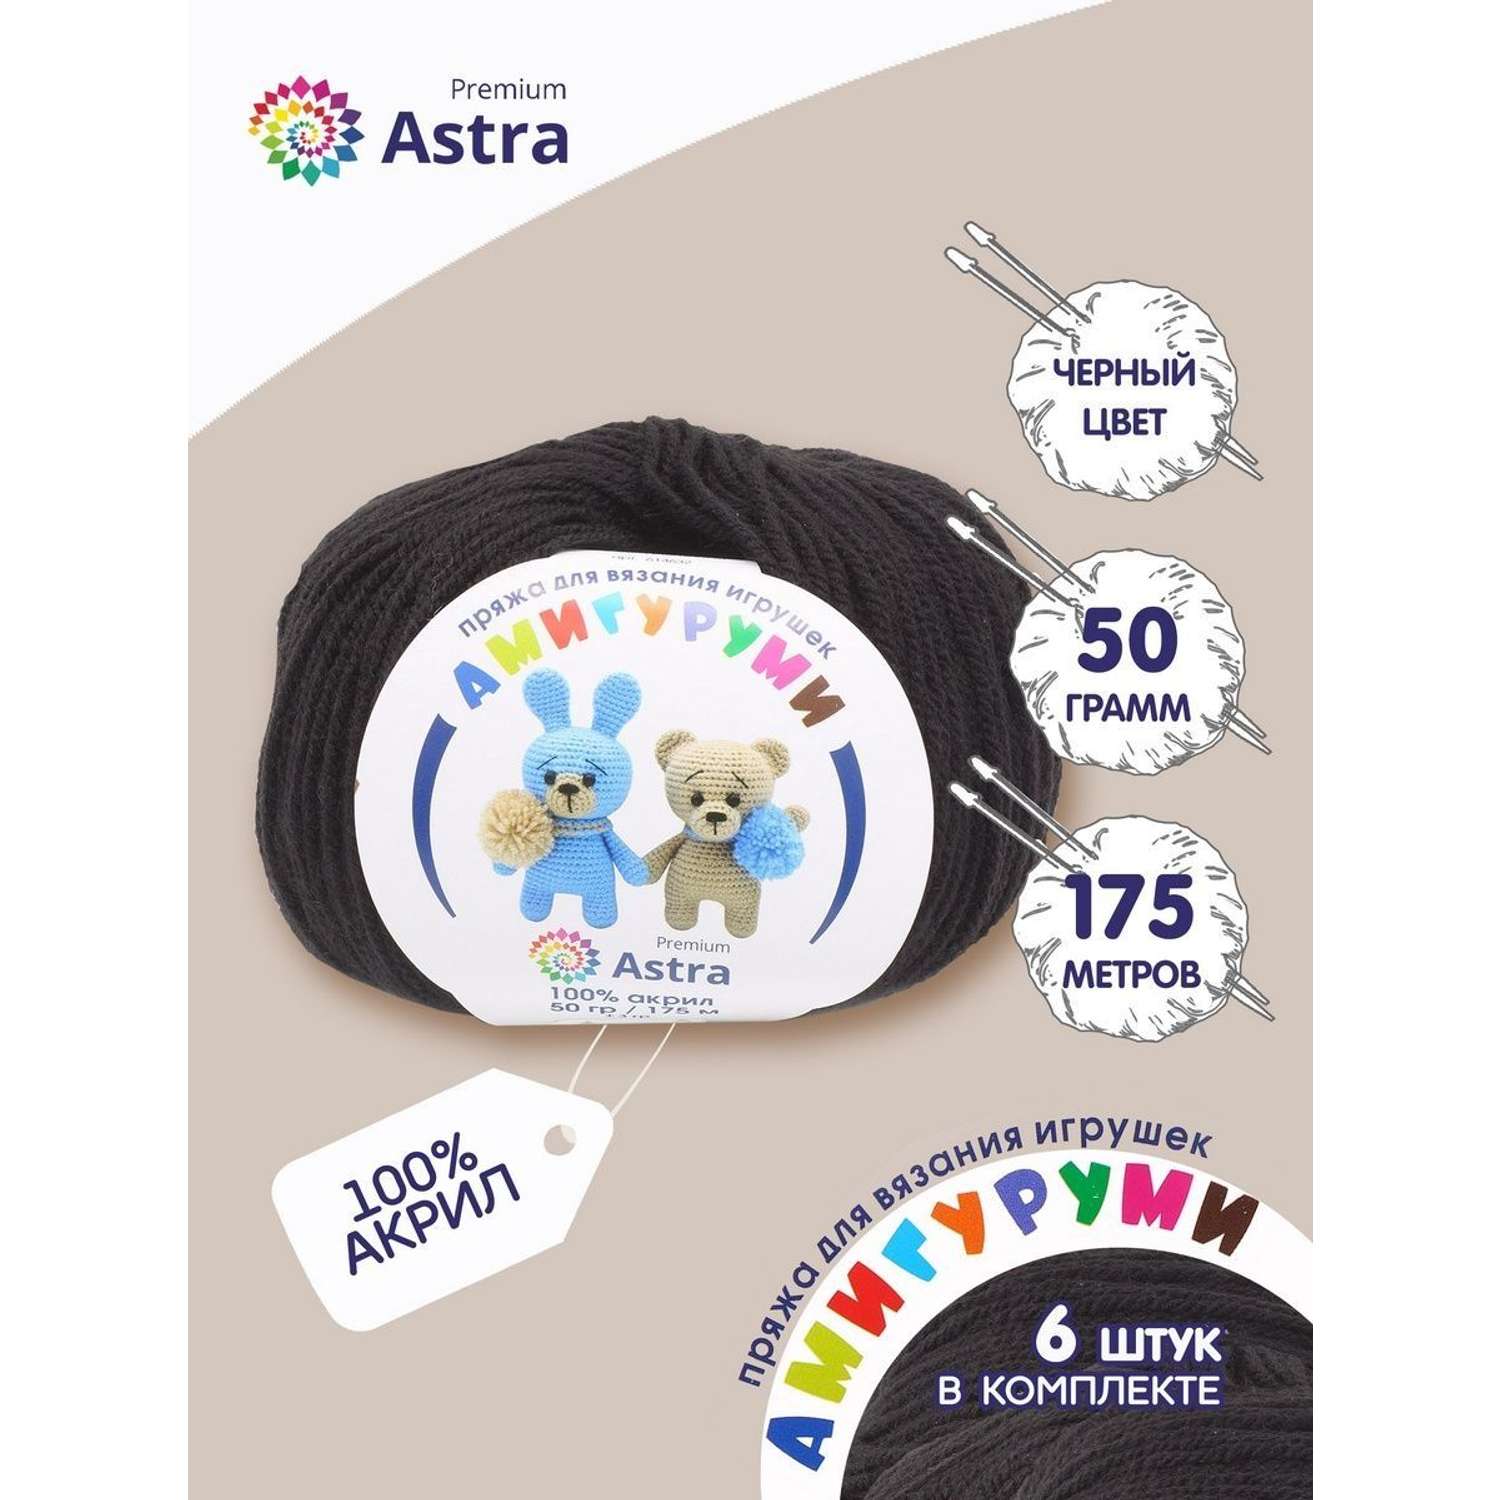 Пряжа для вязания Astra Premium амигуруми акрил для мягких игрушек 50 гр 175 м 003 черный 6 мотков - фото 1